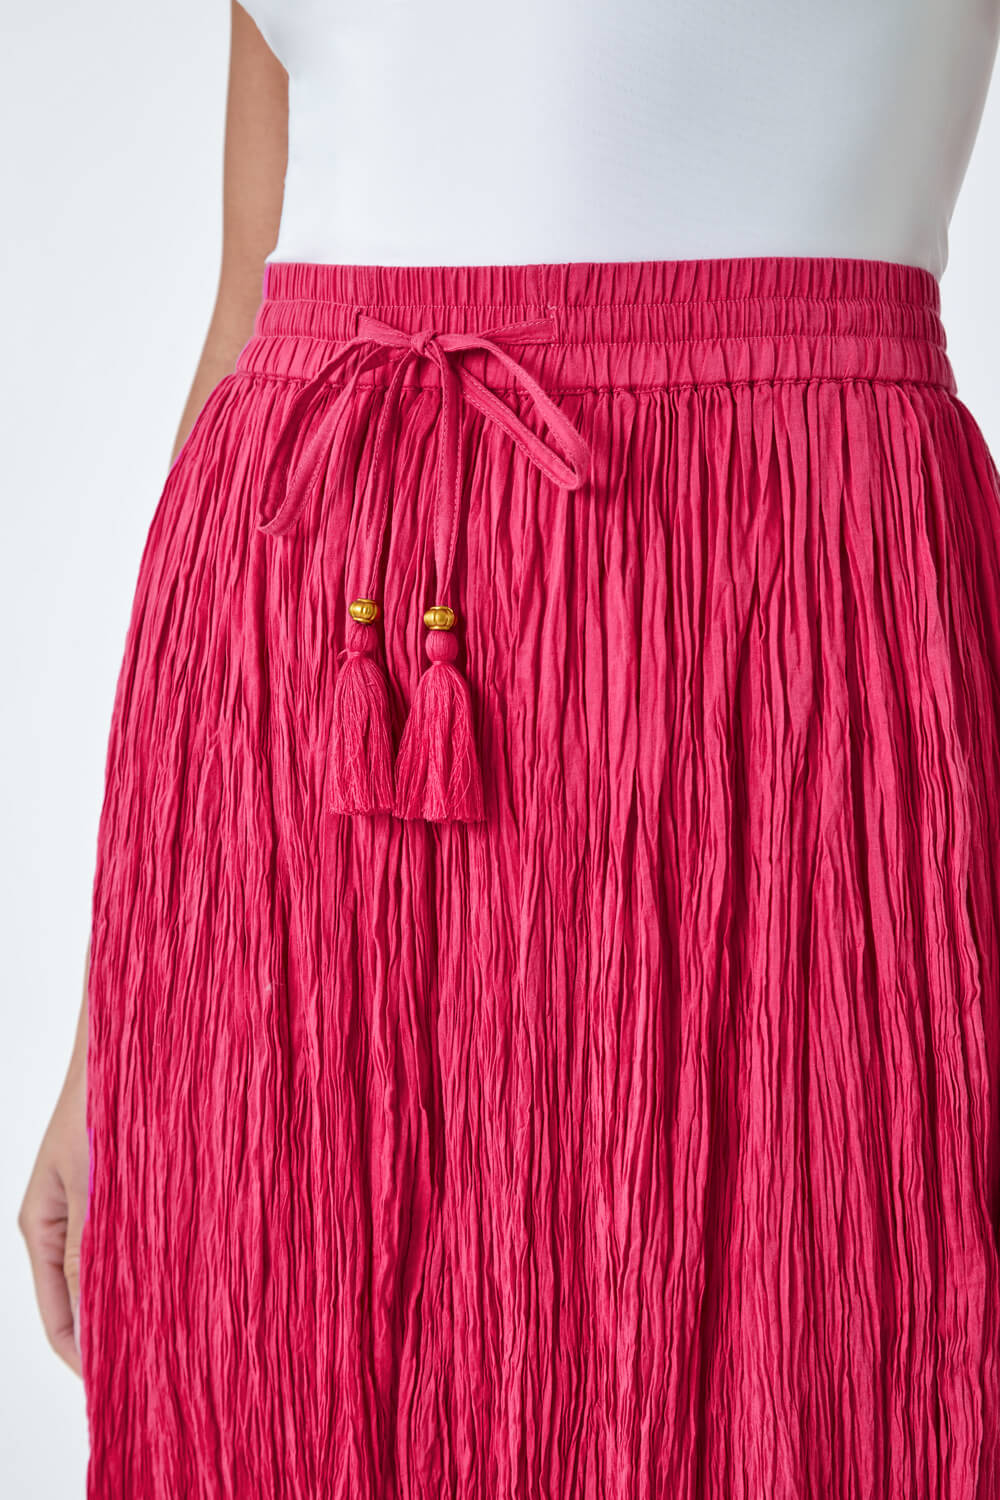 PINK Crinkle Cotton Textured Tassel Midi Skirt, Image 5 of 5